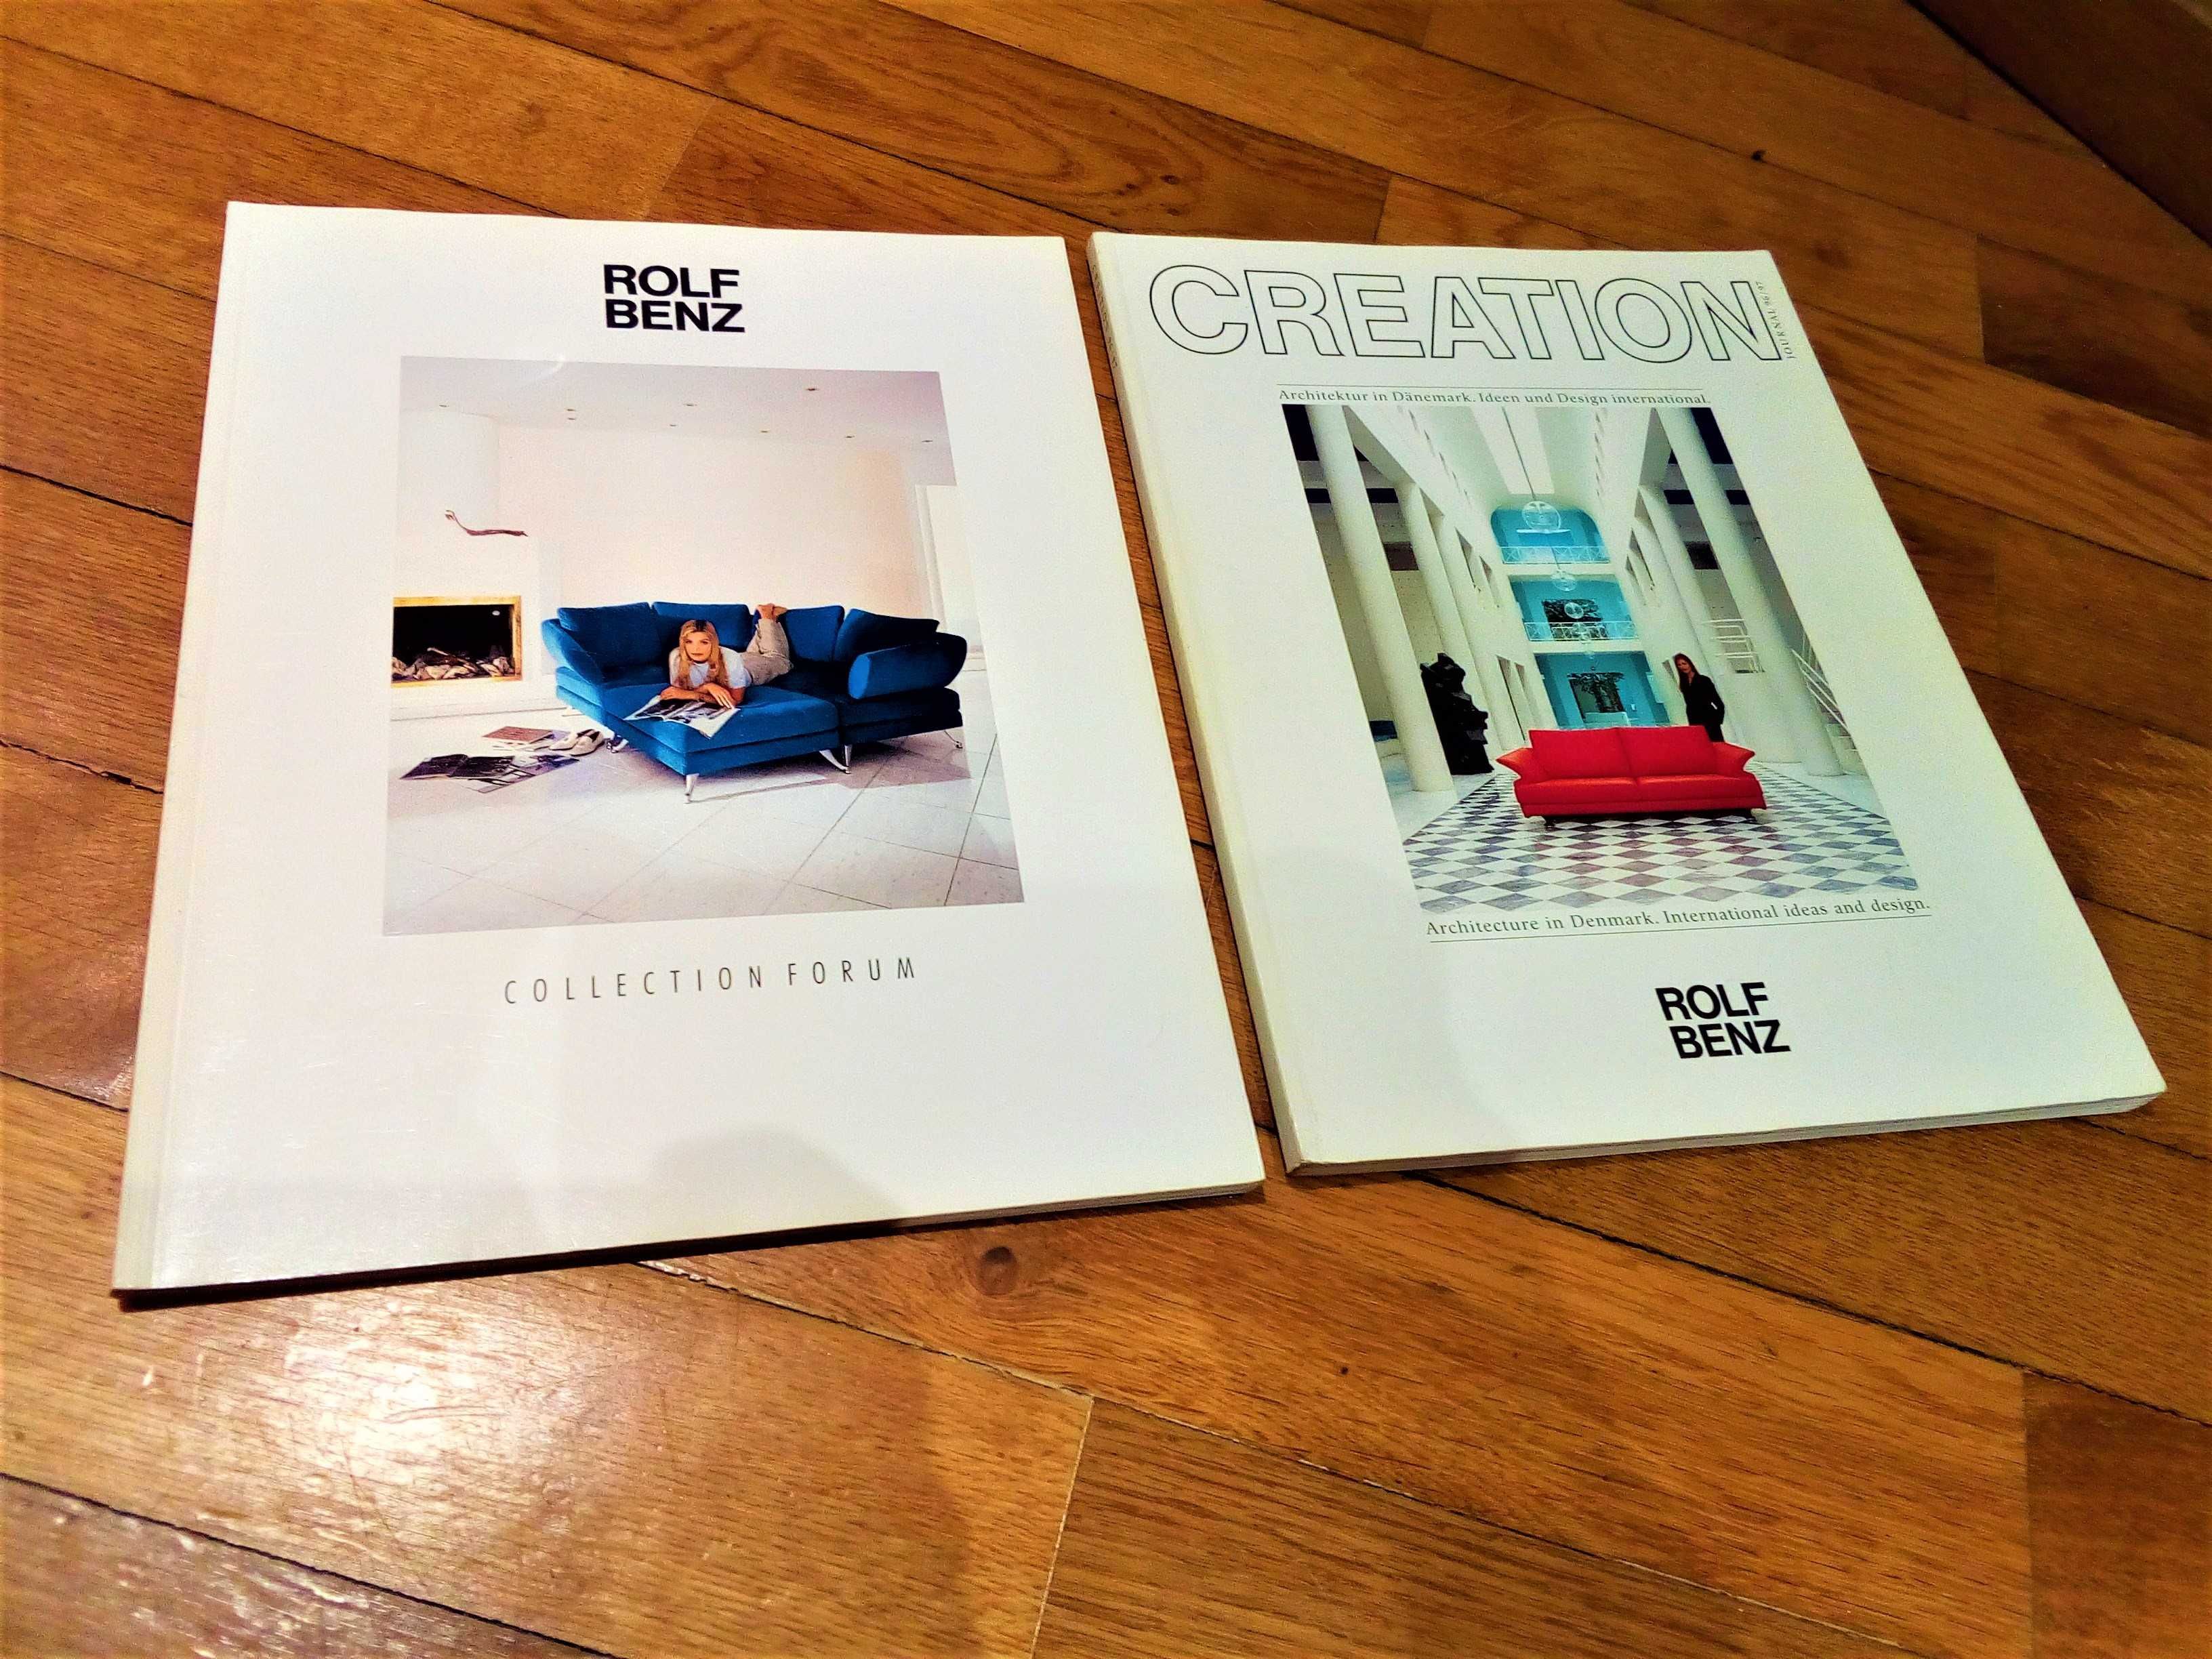 Catálogos da Rolf Benz - Sofás/Mobiliário